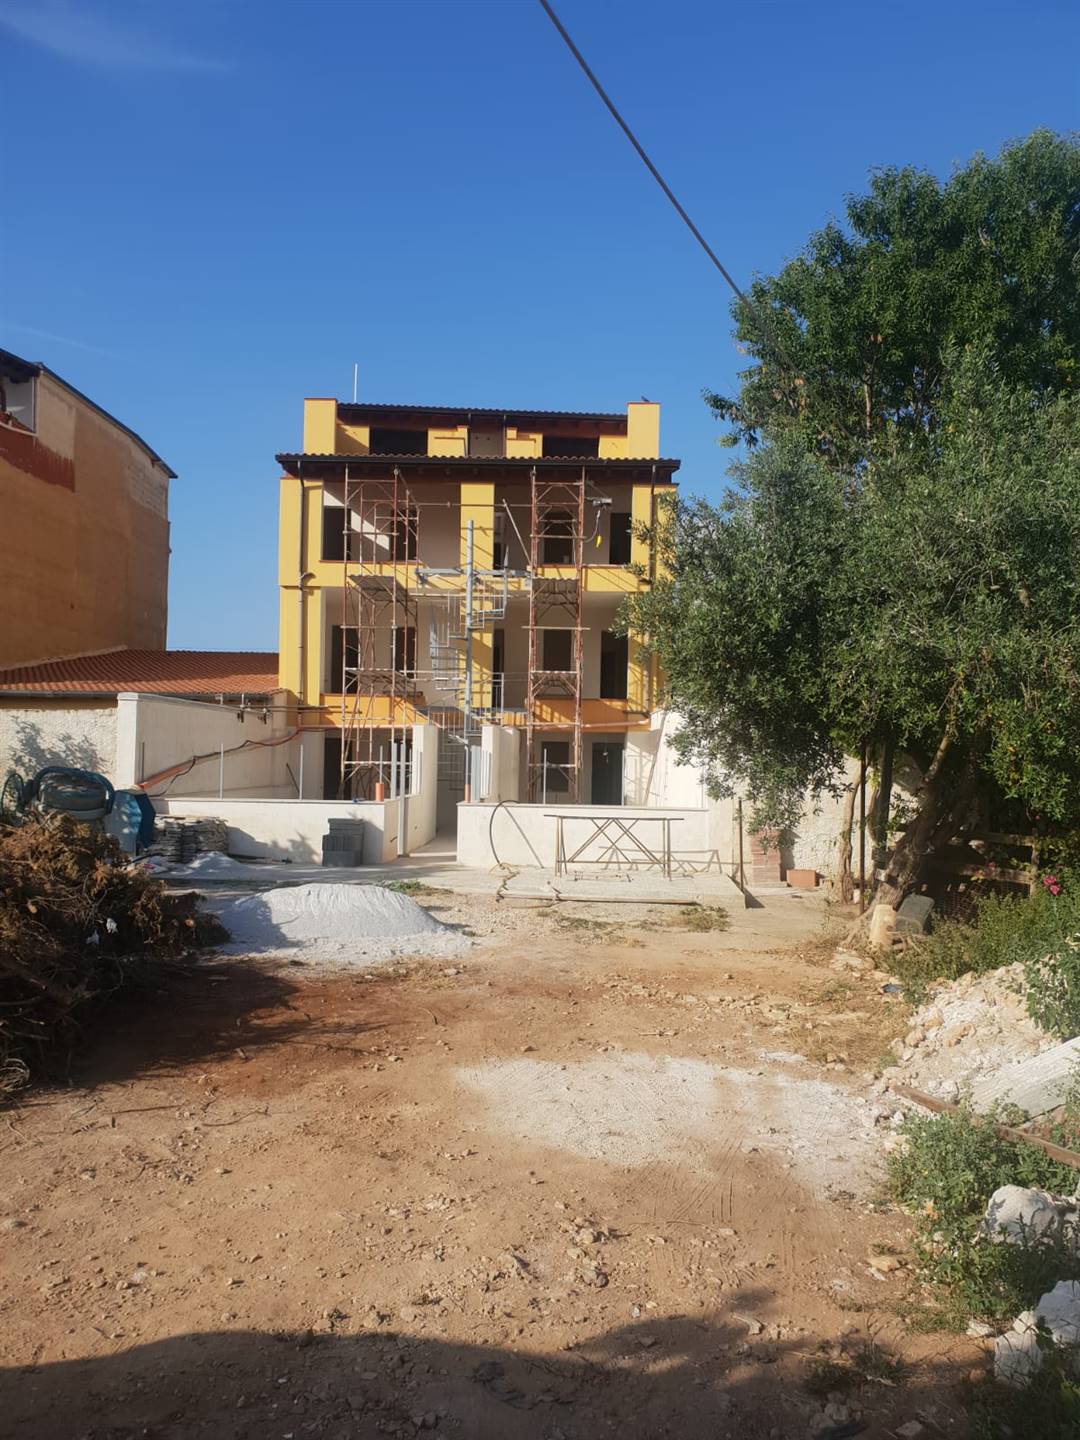 Trilocale ristrutturato in zona Pallavicino a Palermo